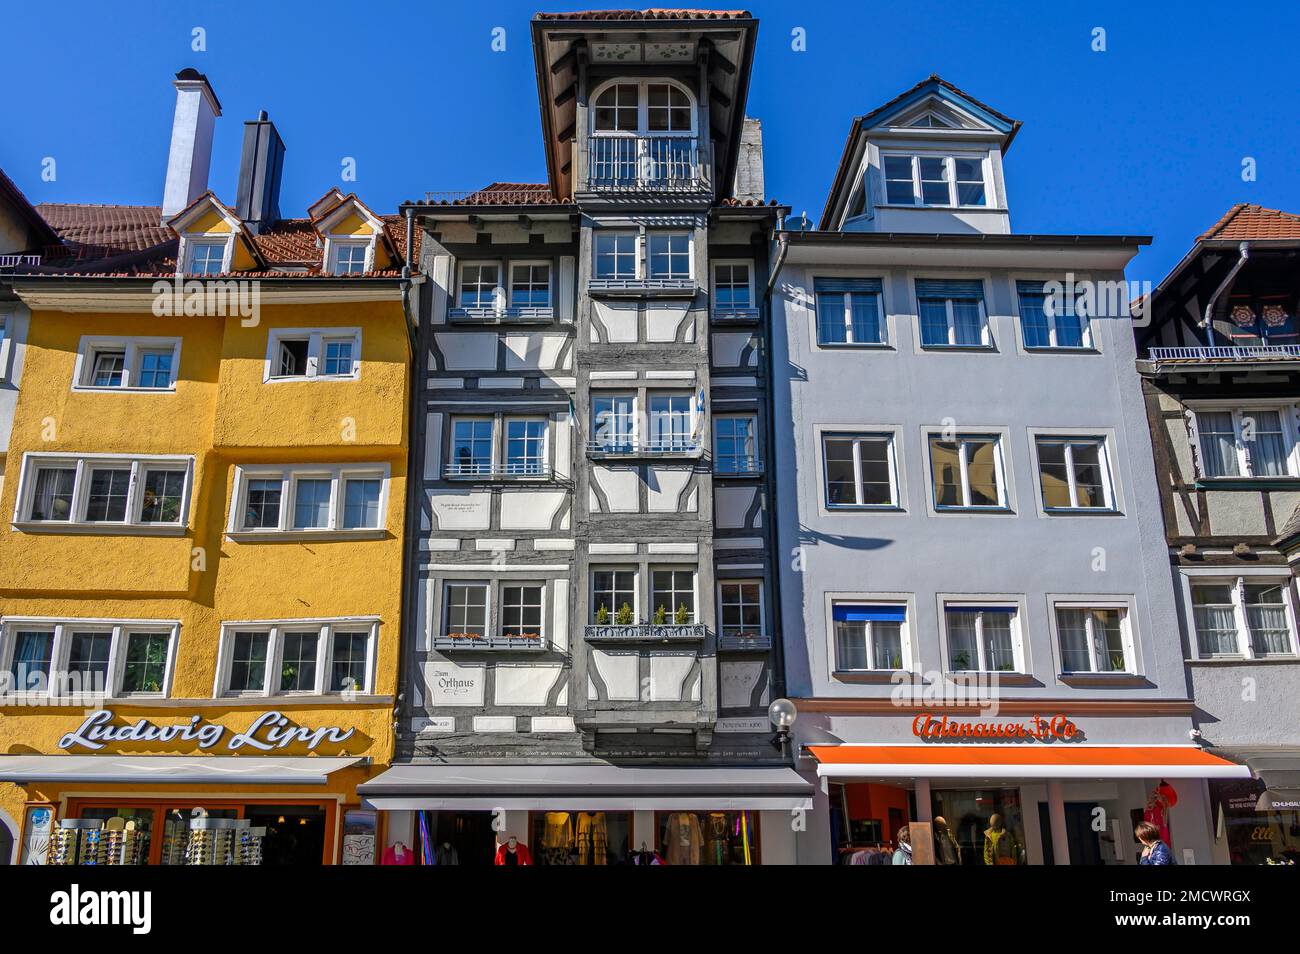 Fachwerkfassade, das Orthaus mit Aufzug, das um 1600 in Lindau, Schwäbien, Bayern, errichtet wurde Stockfoto